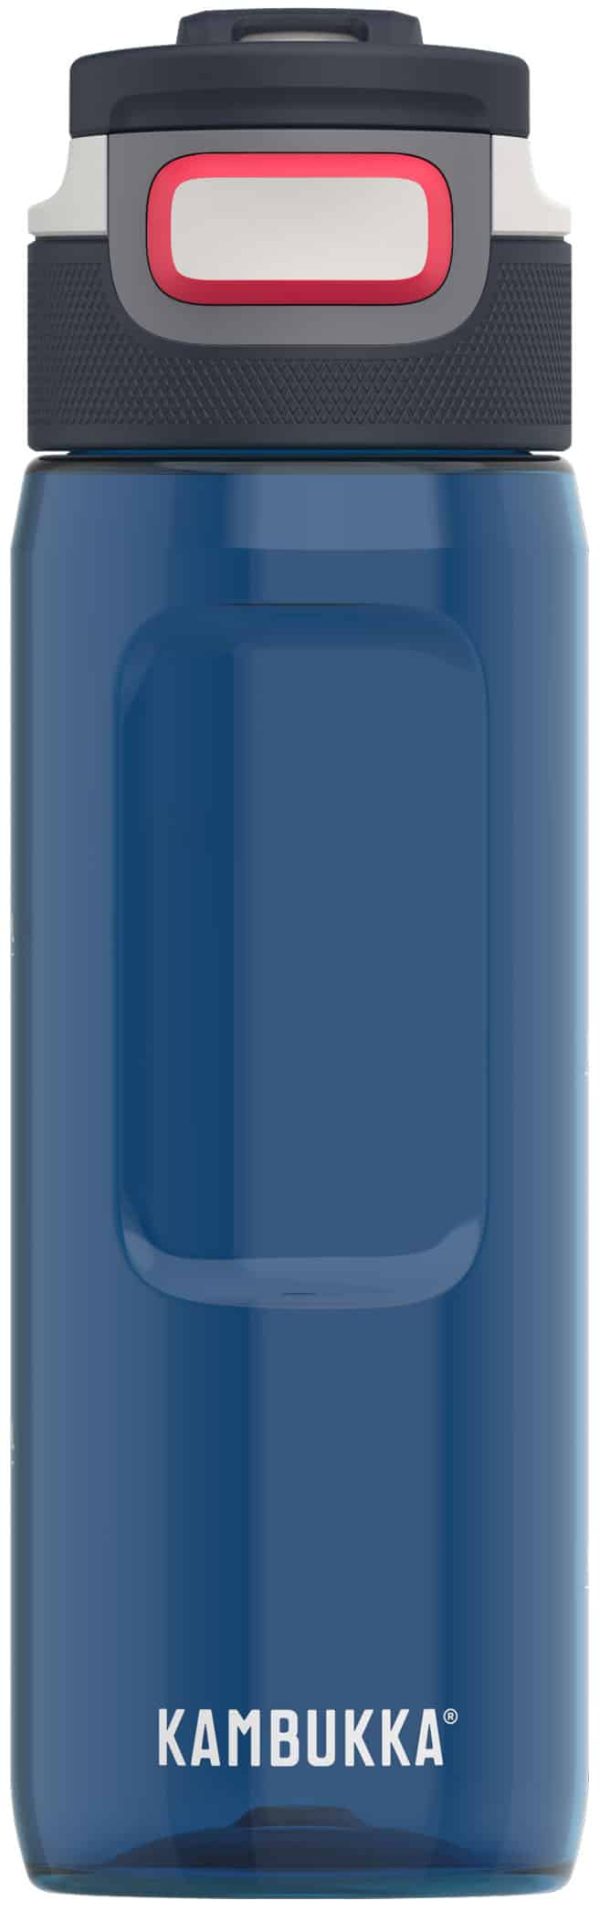 בקבוק שתיה כחול 750 מ”ל Kambukka Elton Midnight Blue קמבוקה￼